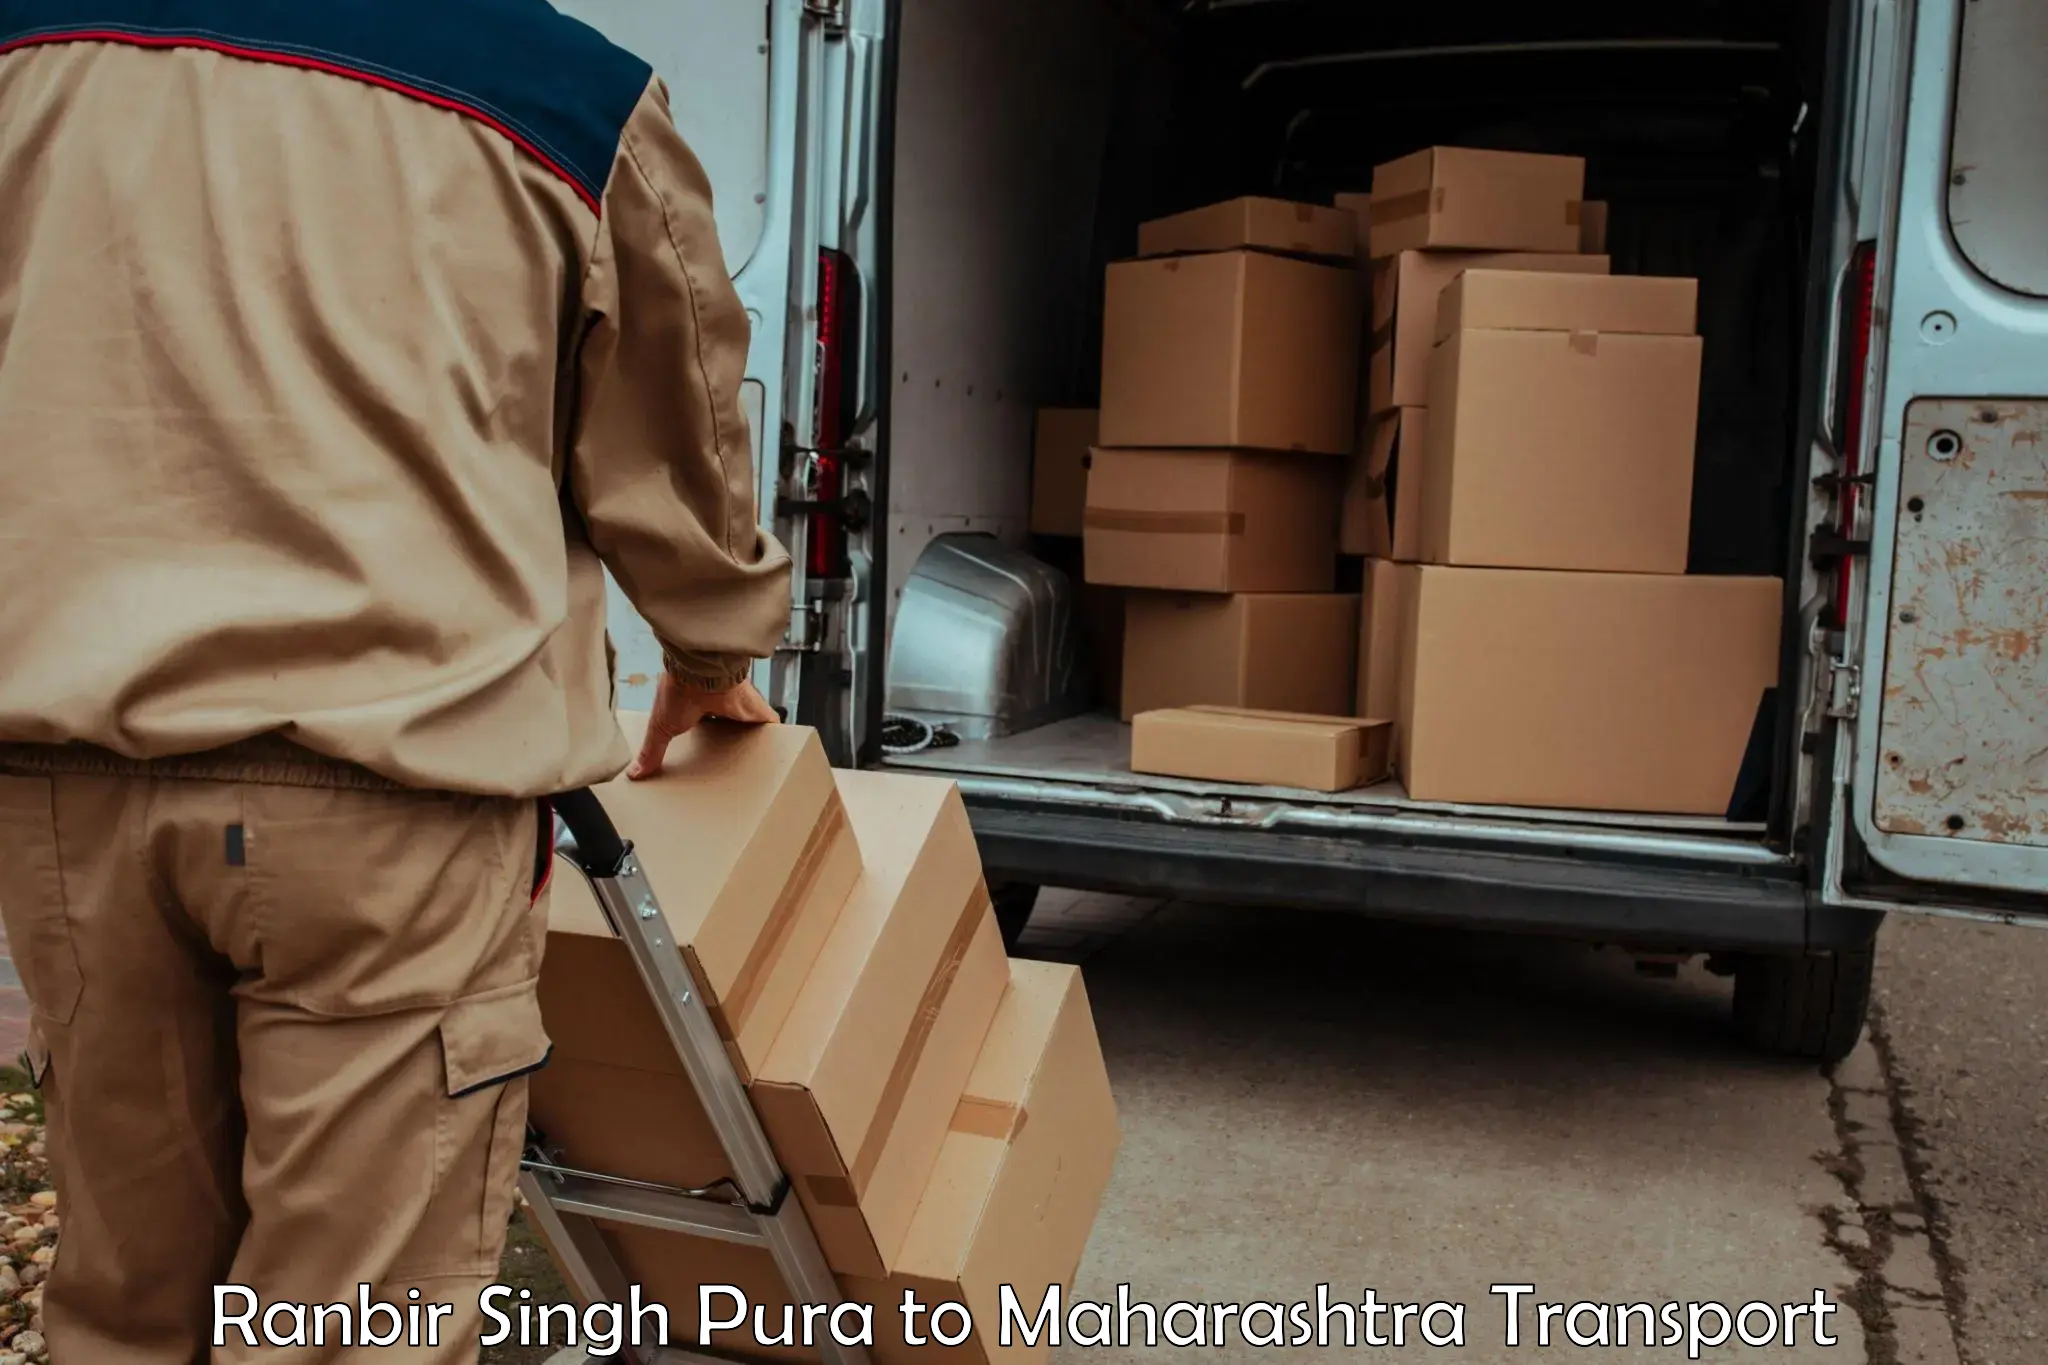 Transportation services in Ranbir Singh Pura to Alibag